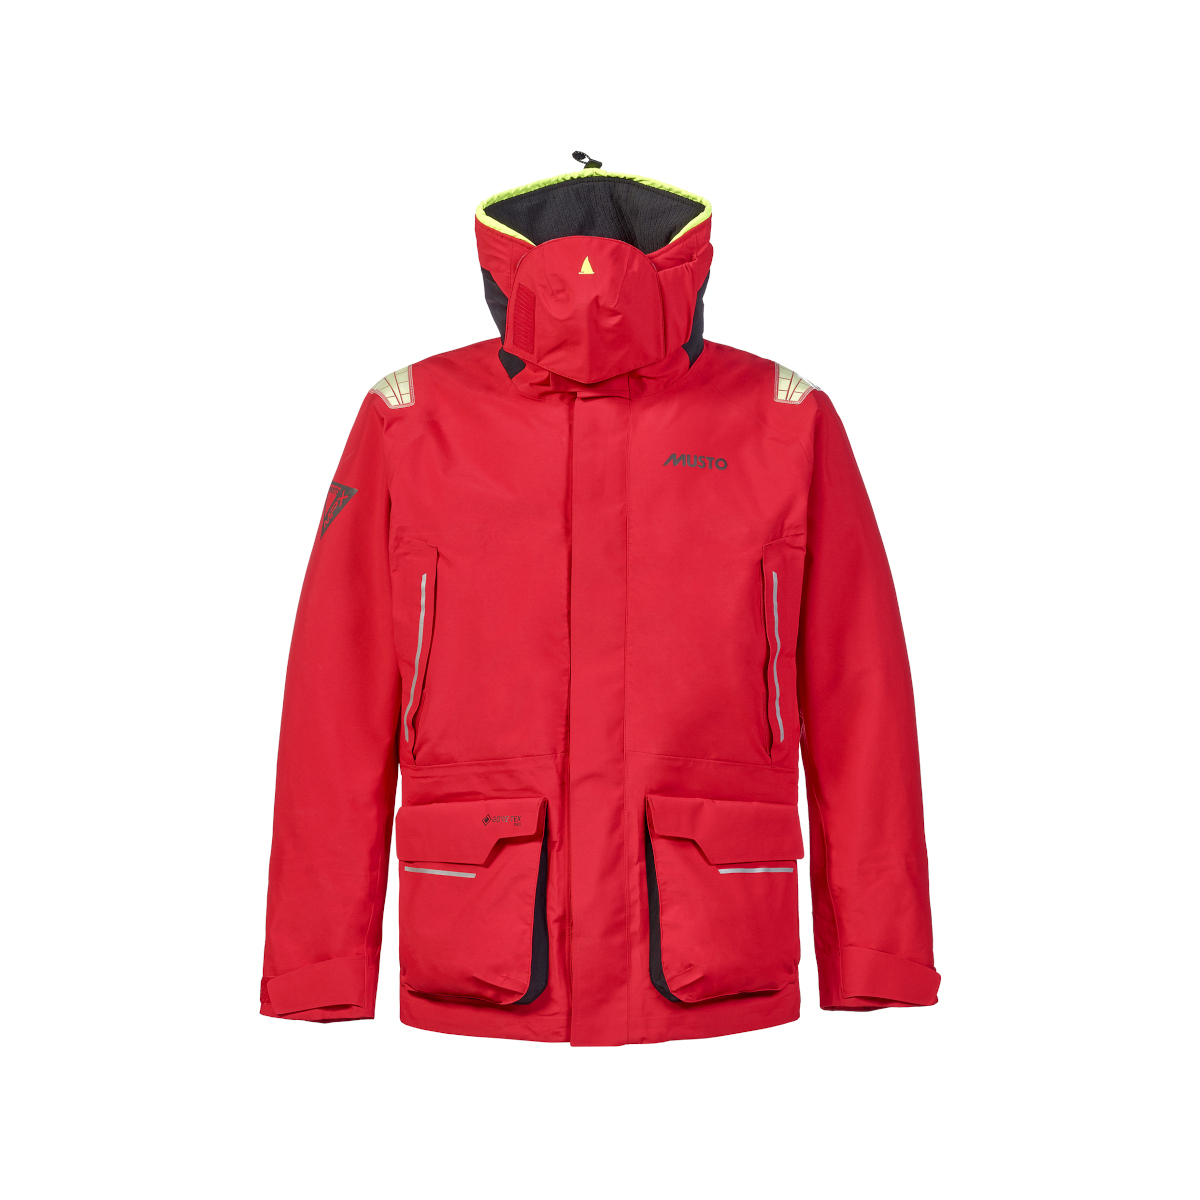 Musto MPX Gore-Tex Pro Offshore 2.0 veste de voile homme rouge, taille L